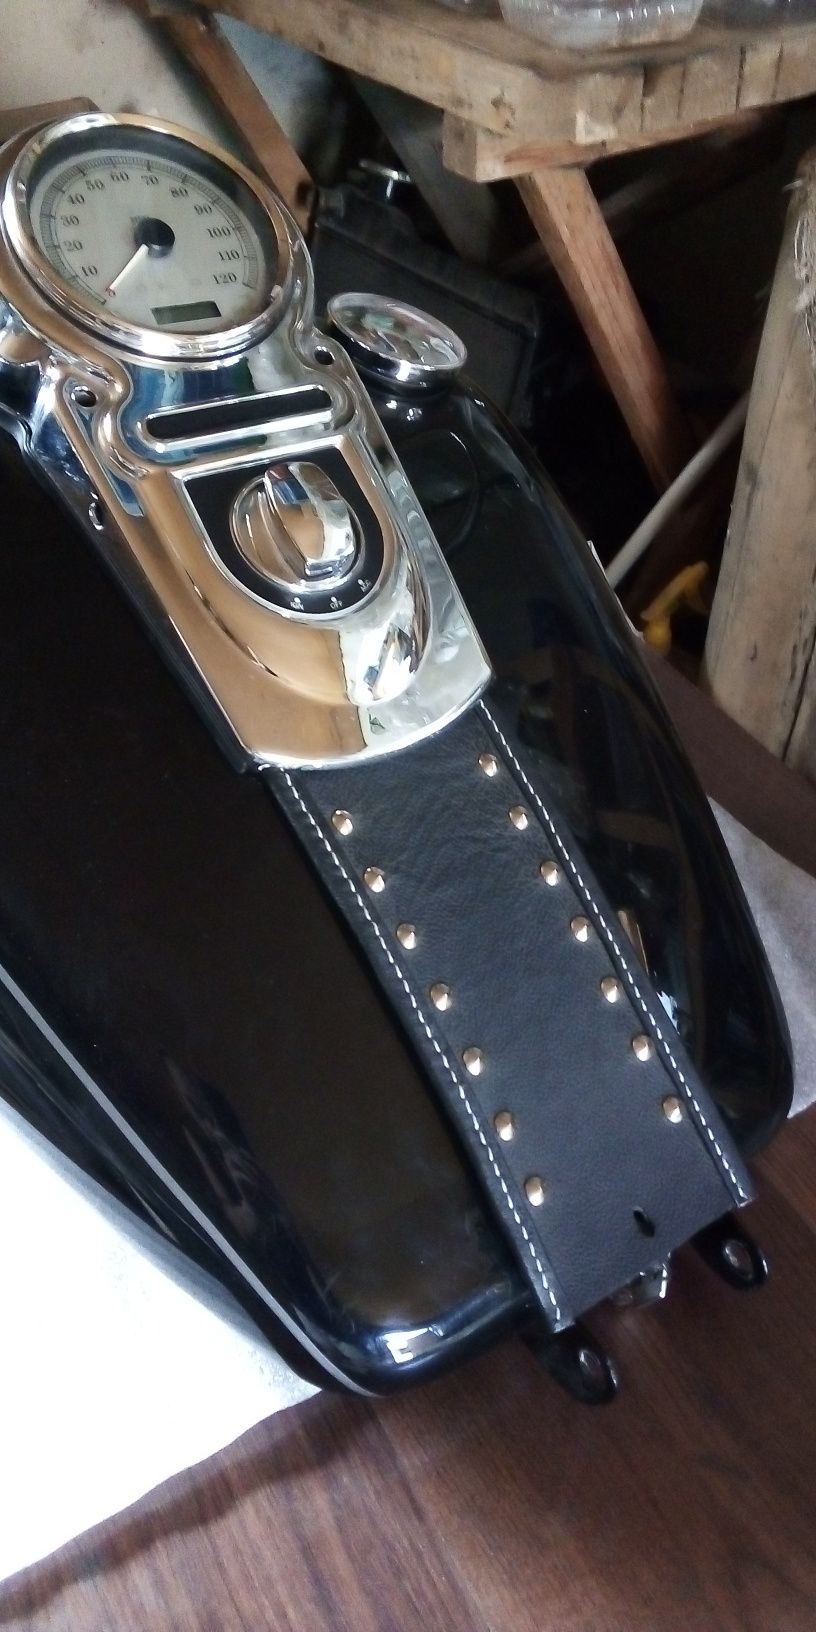 Галстук, накладка на бак Harley Davidson dyna switchback, hand made!